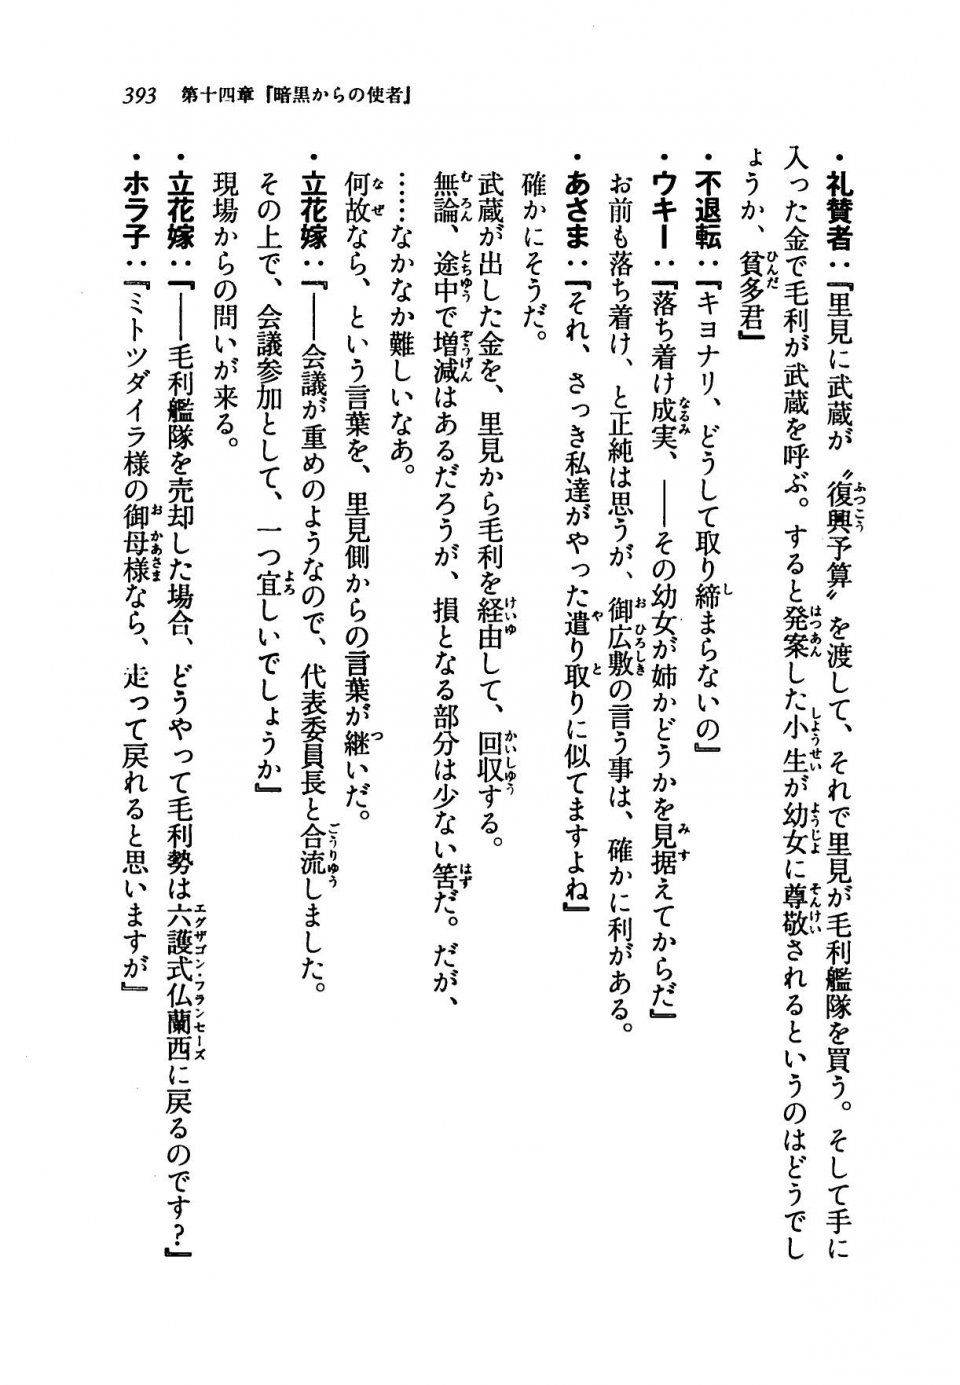 Kyoukai Senjou no Horizon LN Vol 19(8A) - Photo #393